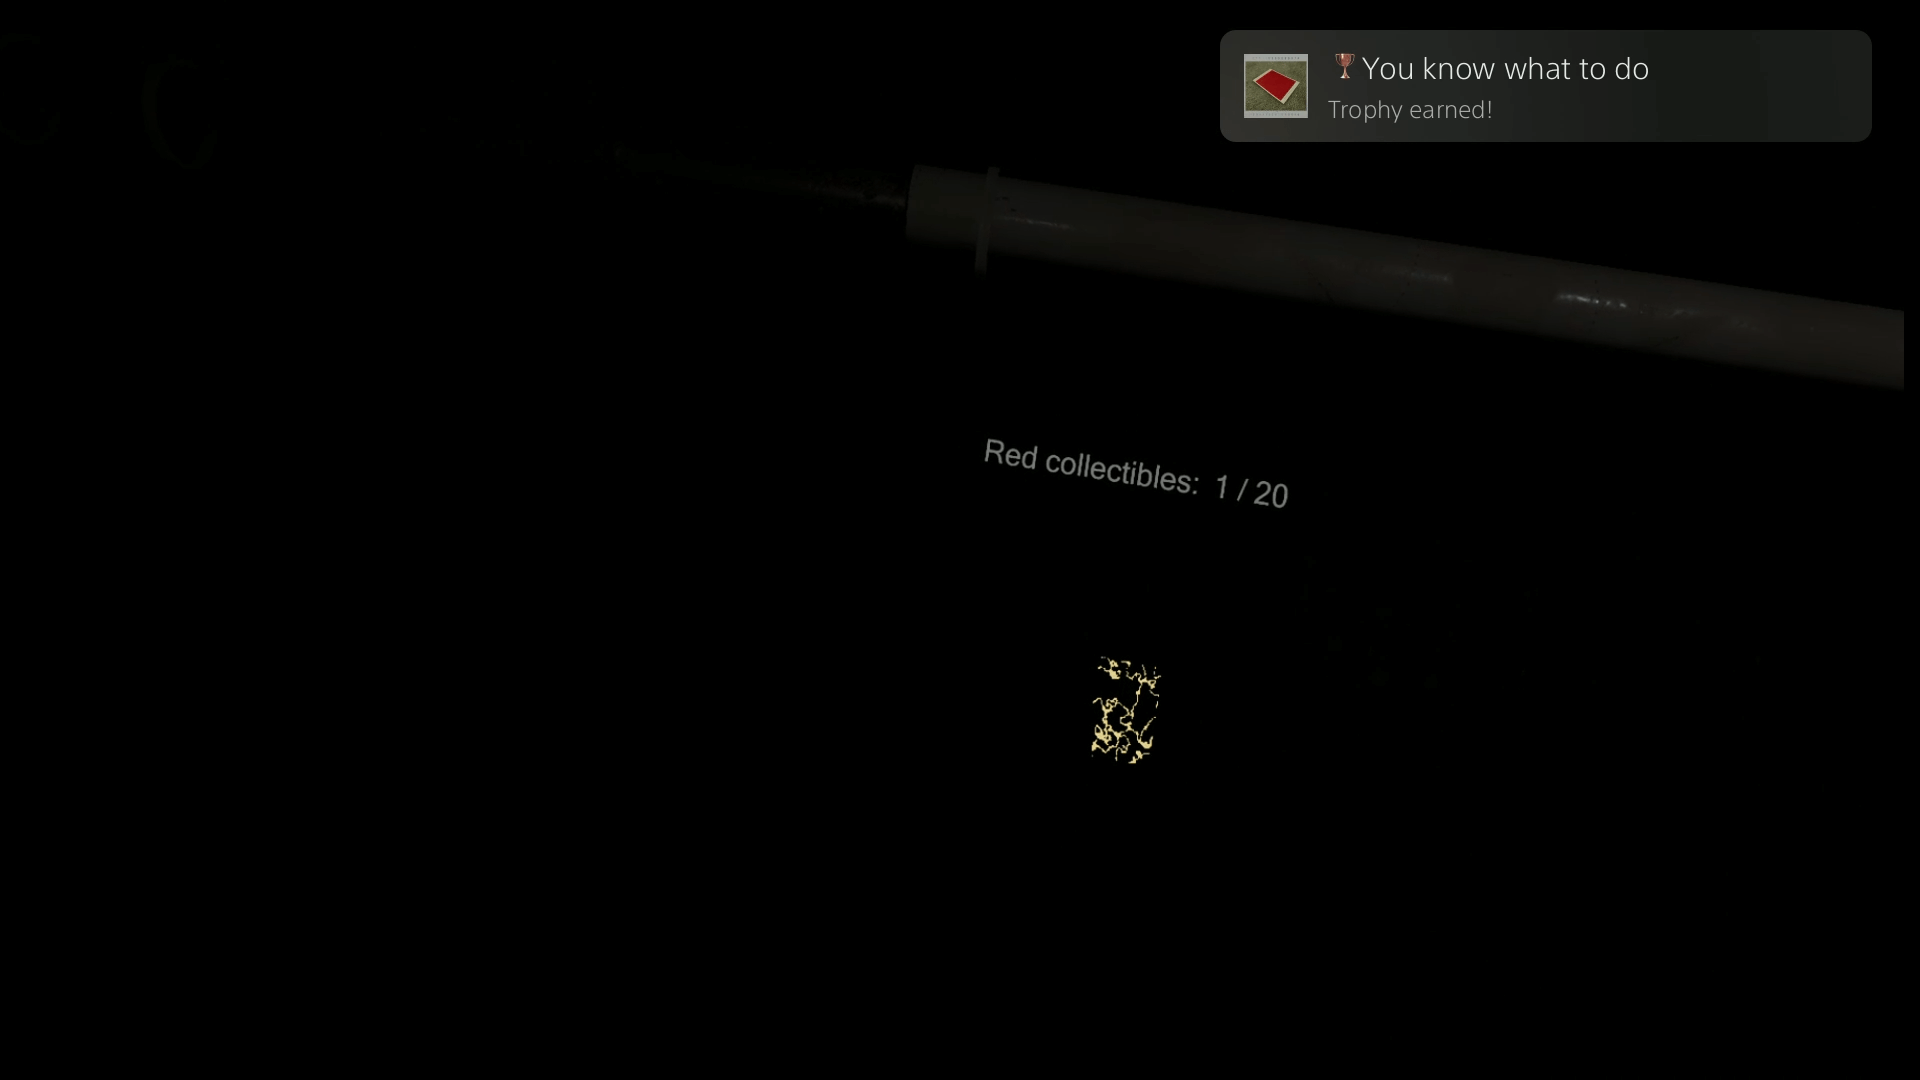 capture d'écran de Madison VR.  une pièce sombre, au milieu un polaroïd rouge réduit en poussière.  au-dessus, le texte rouge à collectionner 1/20 plane